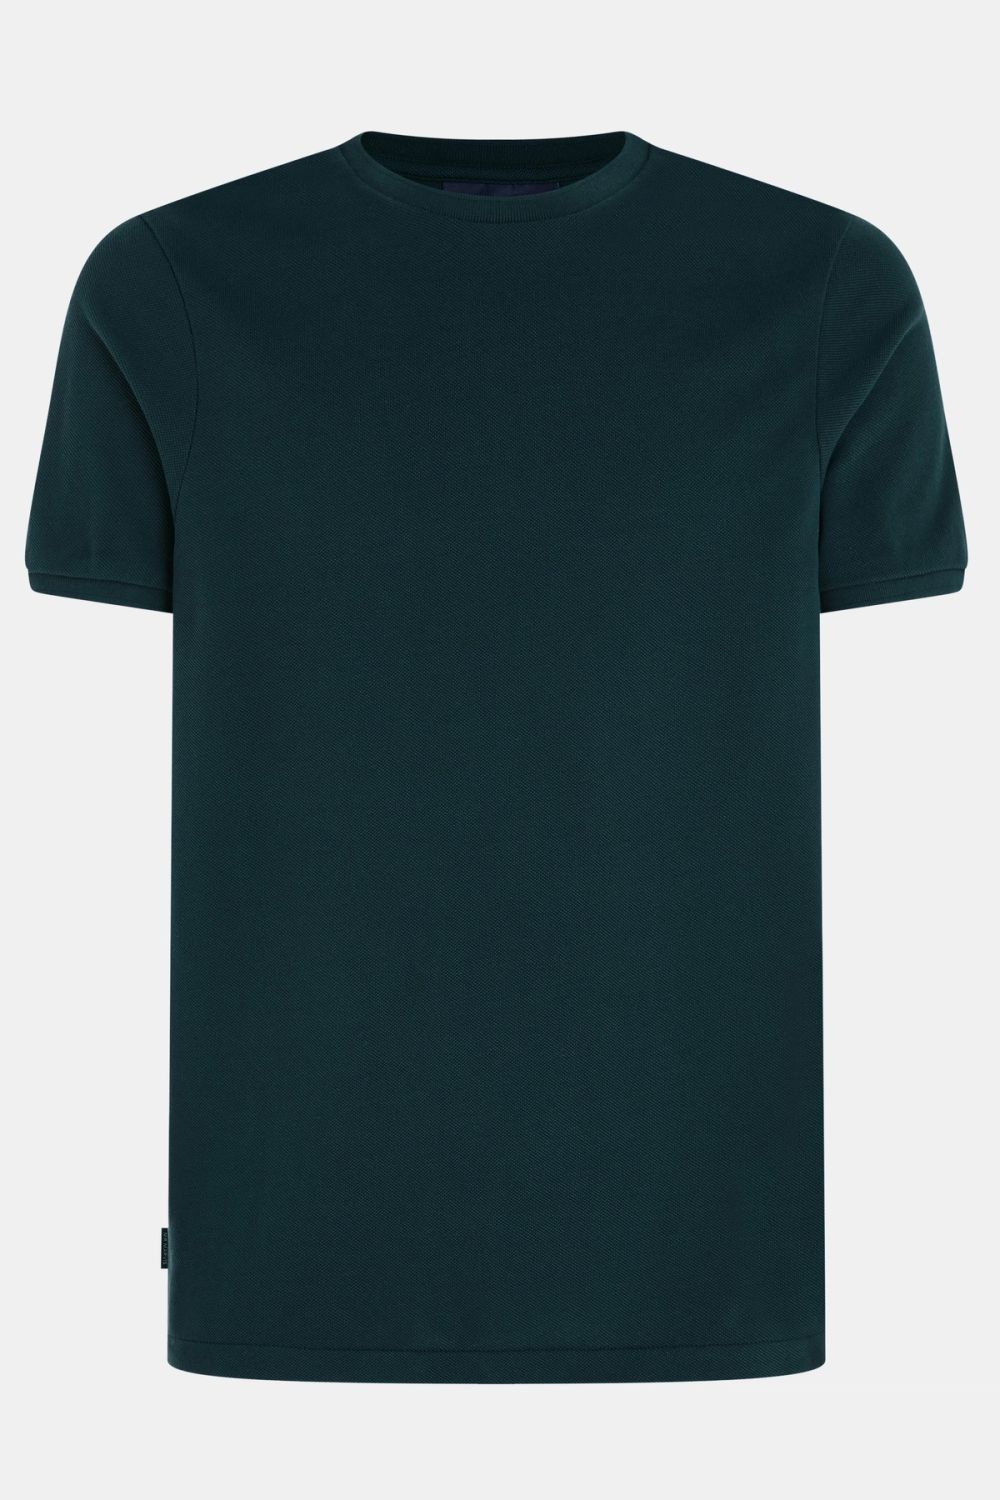 Goodwoods - T-shirt Piqué